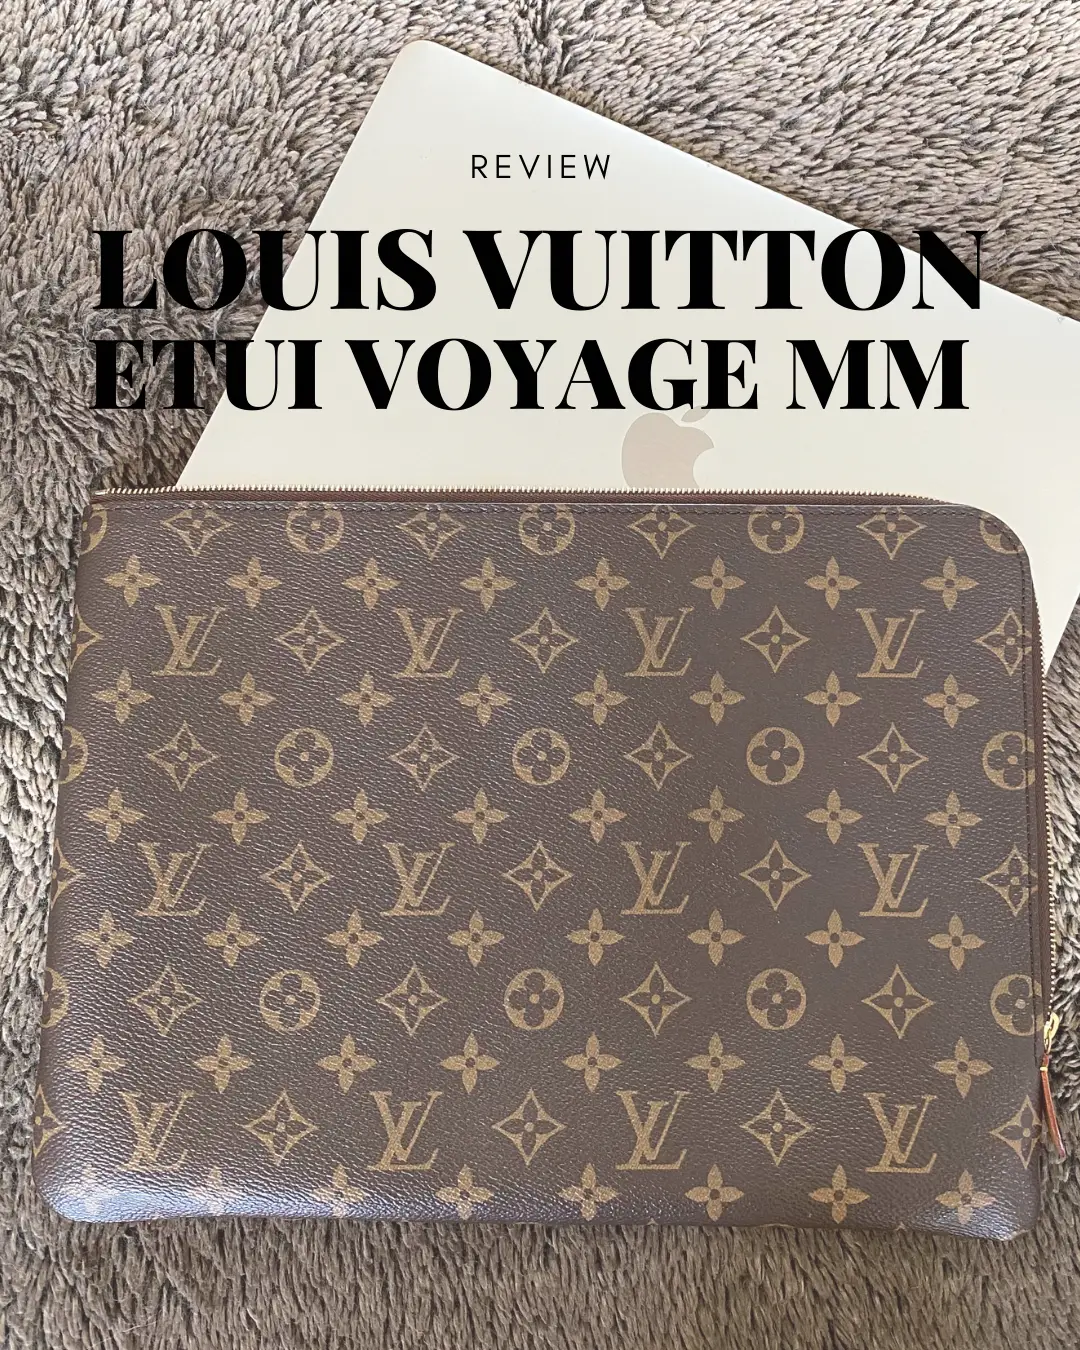 Louis Vuitton Louis Vuitton Etui Voyage MM Monogram Canvas Travel